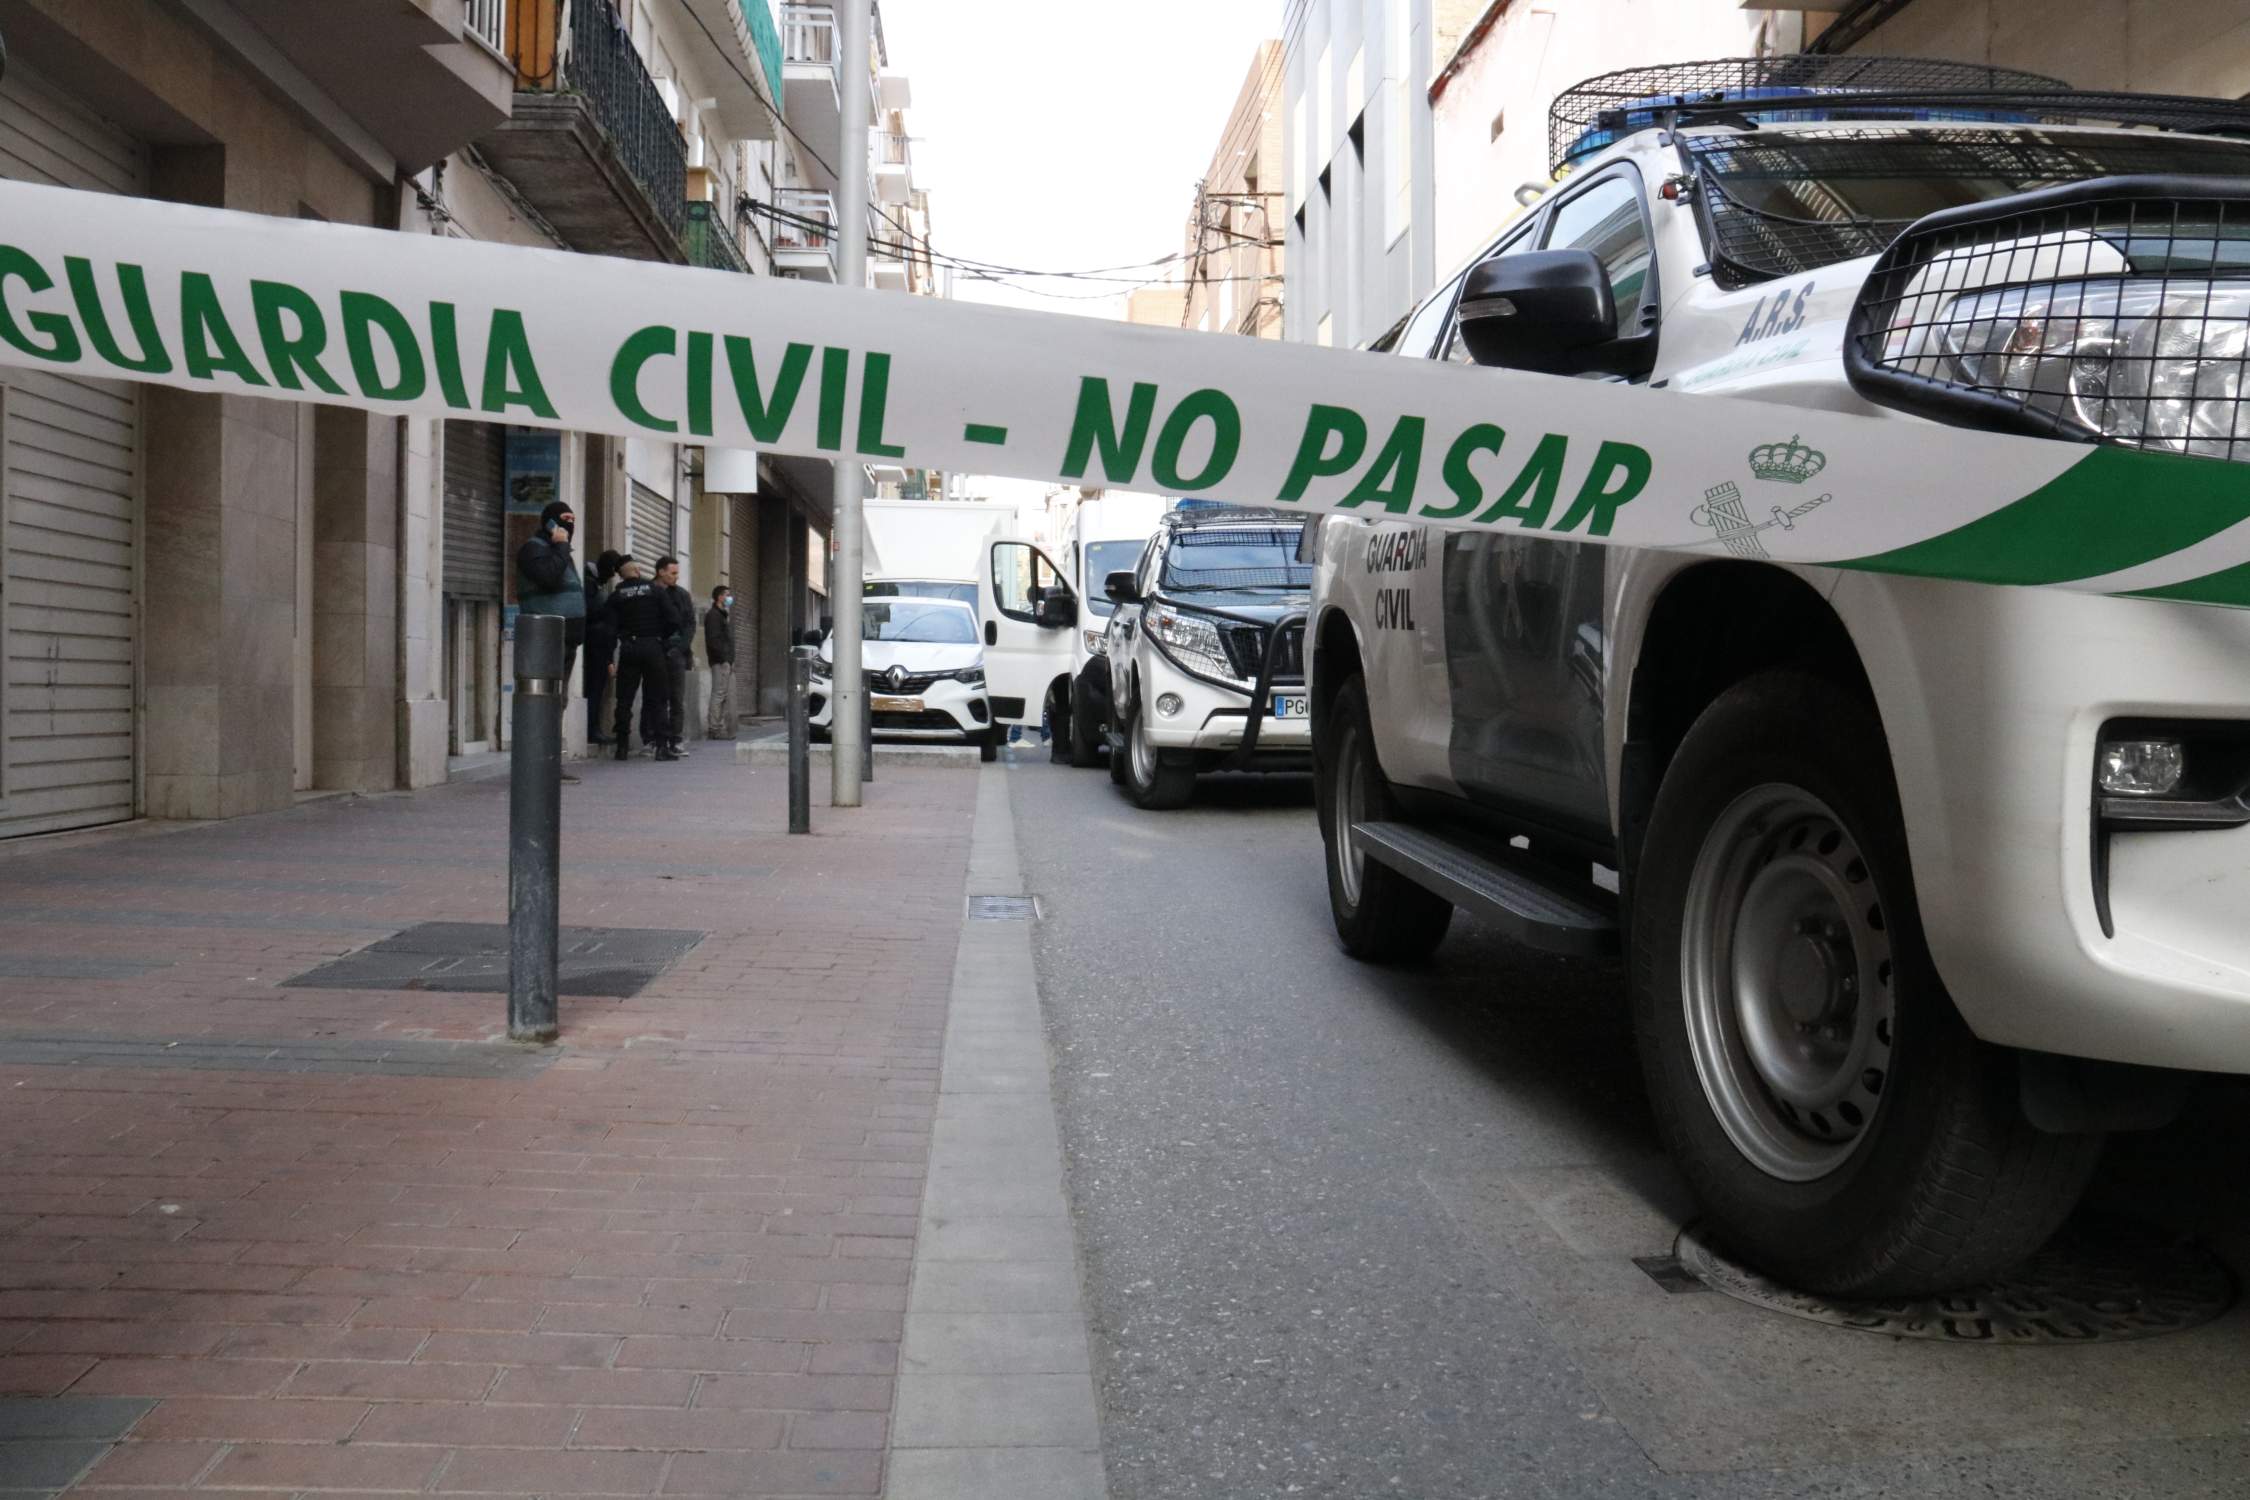 La Guardia Civil, en horas bajas en Catalunya: 1.000 agentes menos y sufren por sus competencias